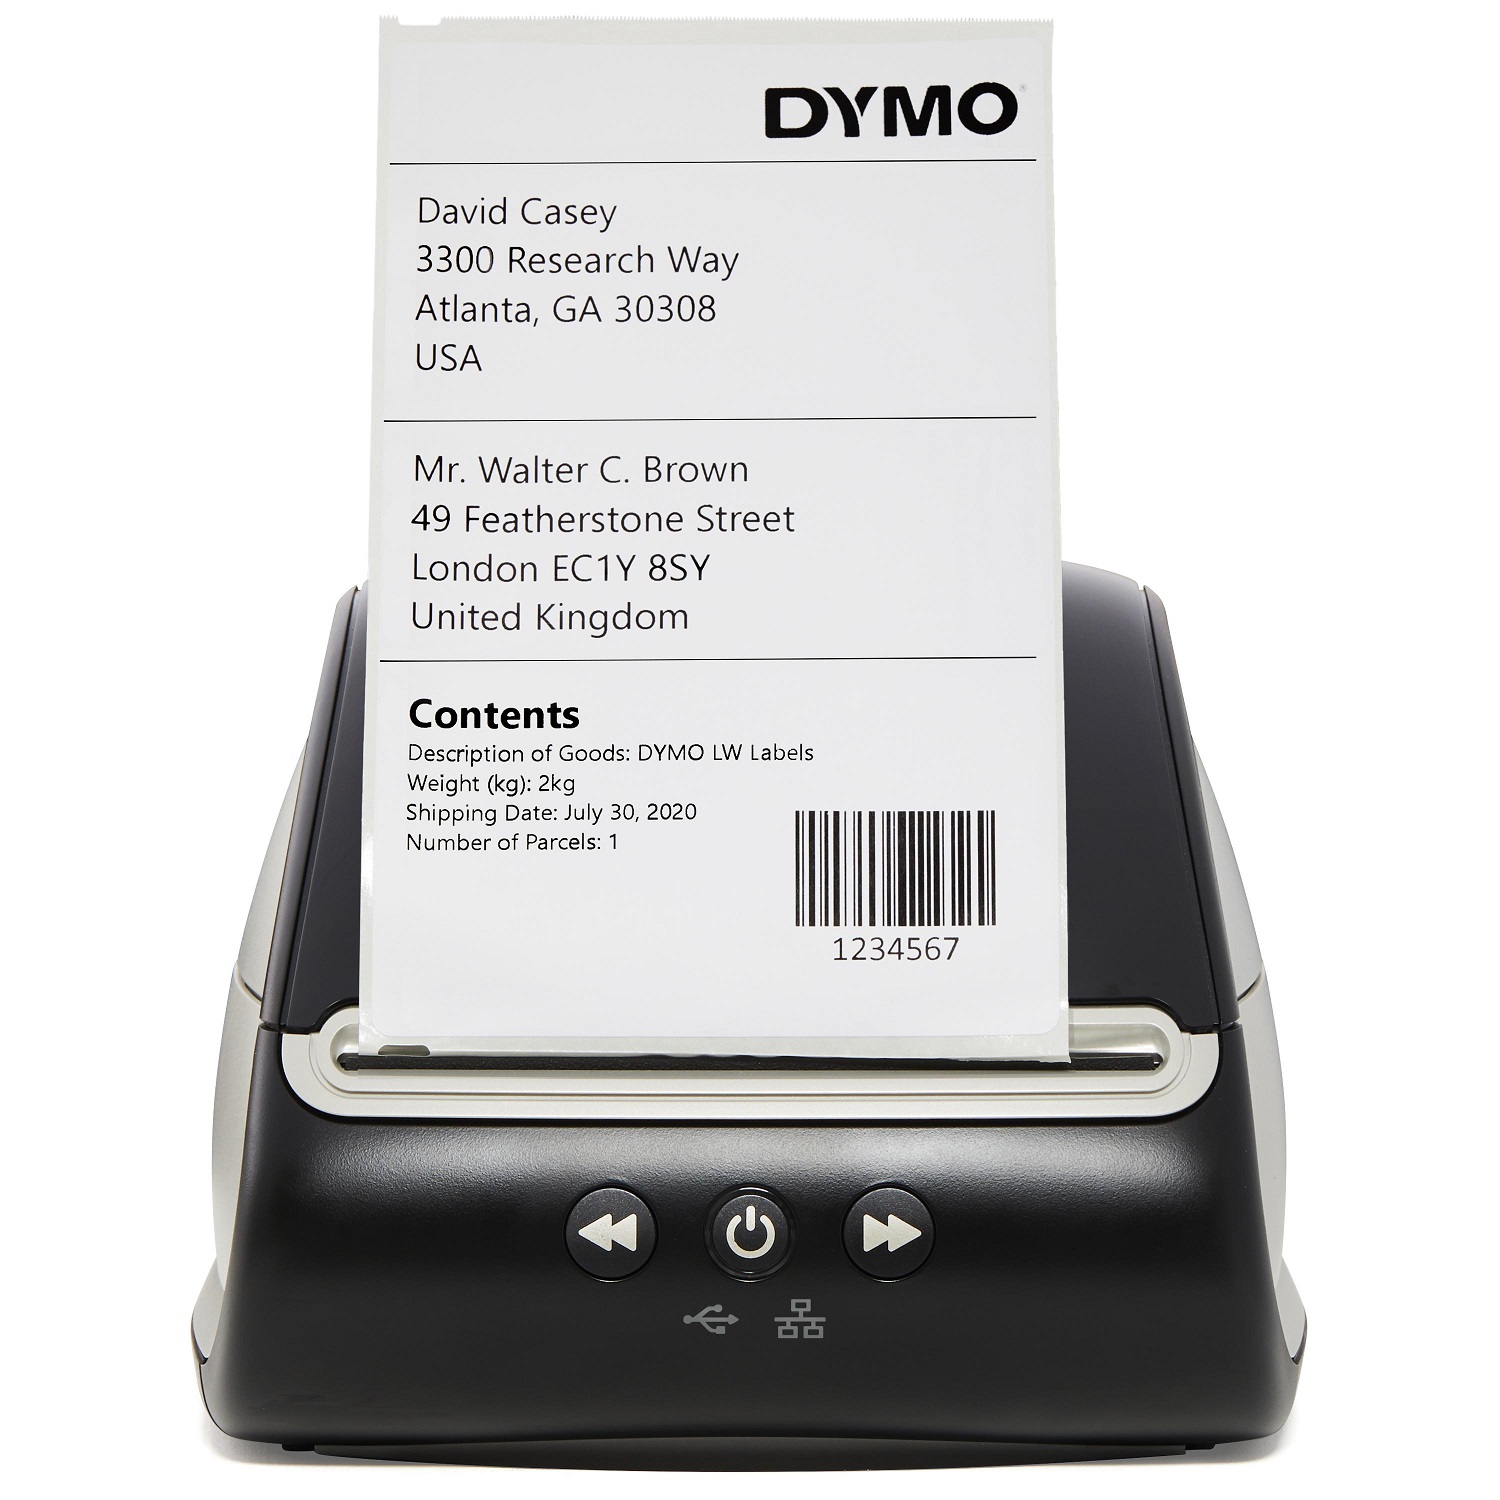 Dymo 2112725, Etikettendrucker, DYMO LabelWriter 5XL bis 2112725 (BILD1)